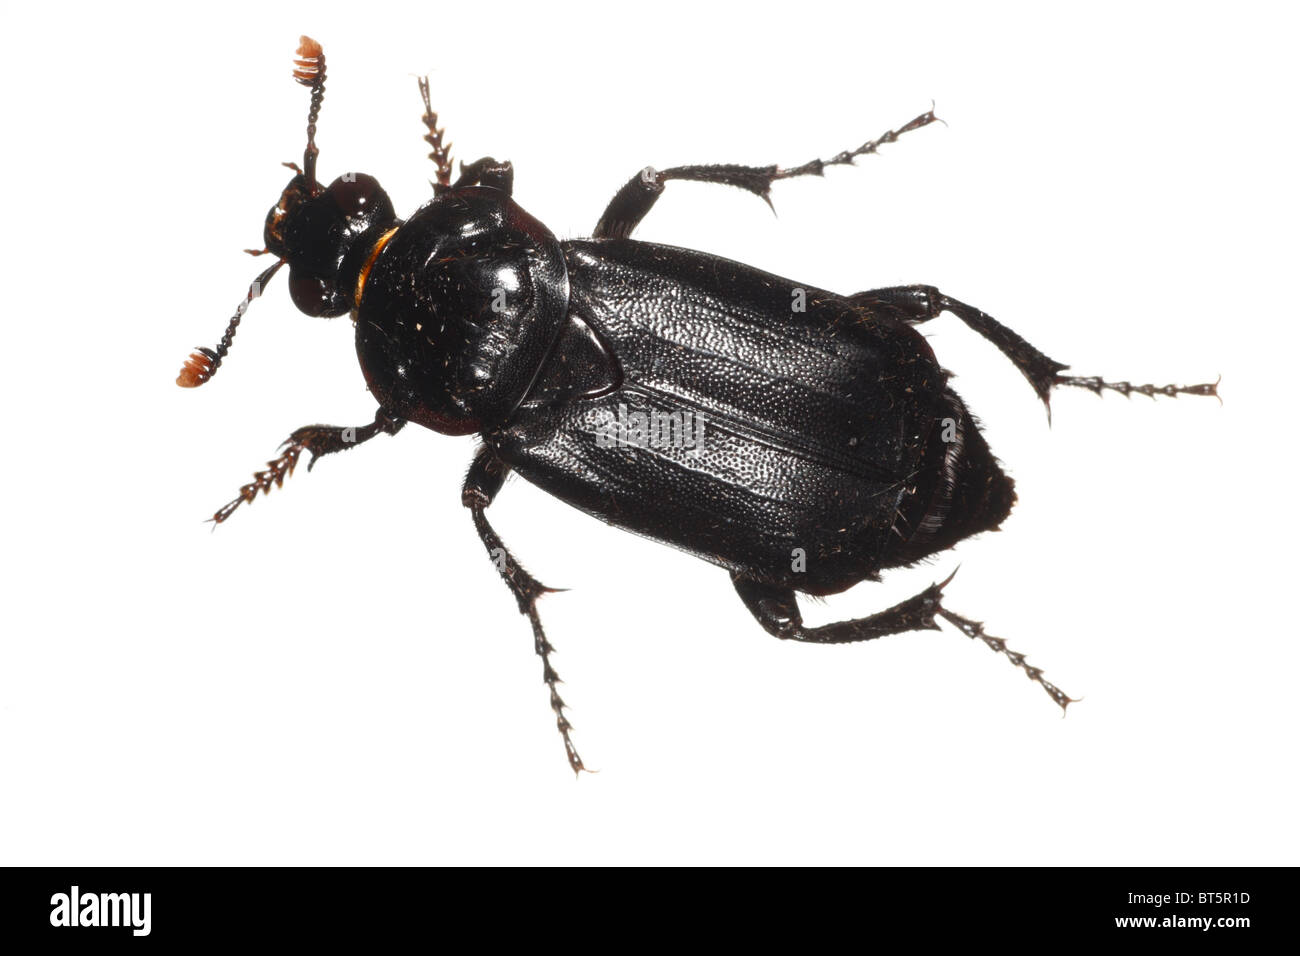 Seppellire o Sexton beetle (Nicrophorus humator). Insetti vivi fotografati contro uno sfondo bianco su un portatile studio. Foto Stock